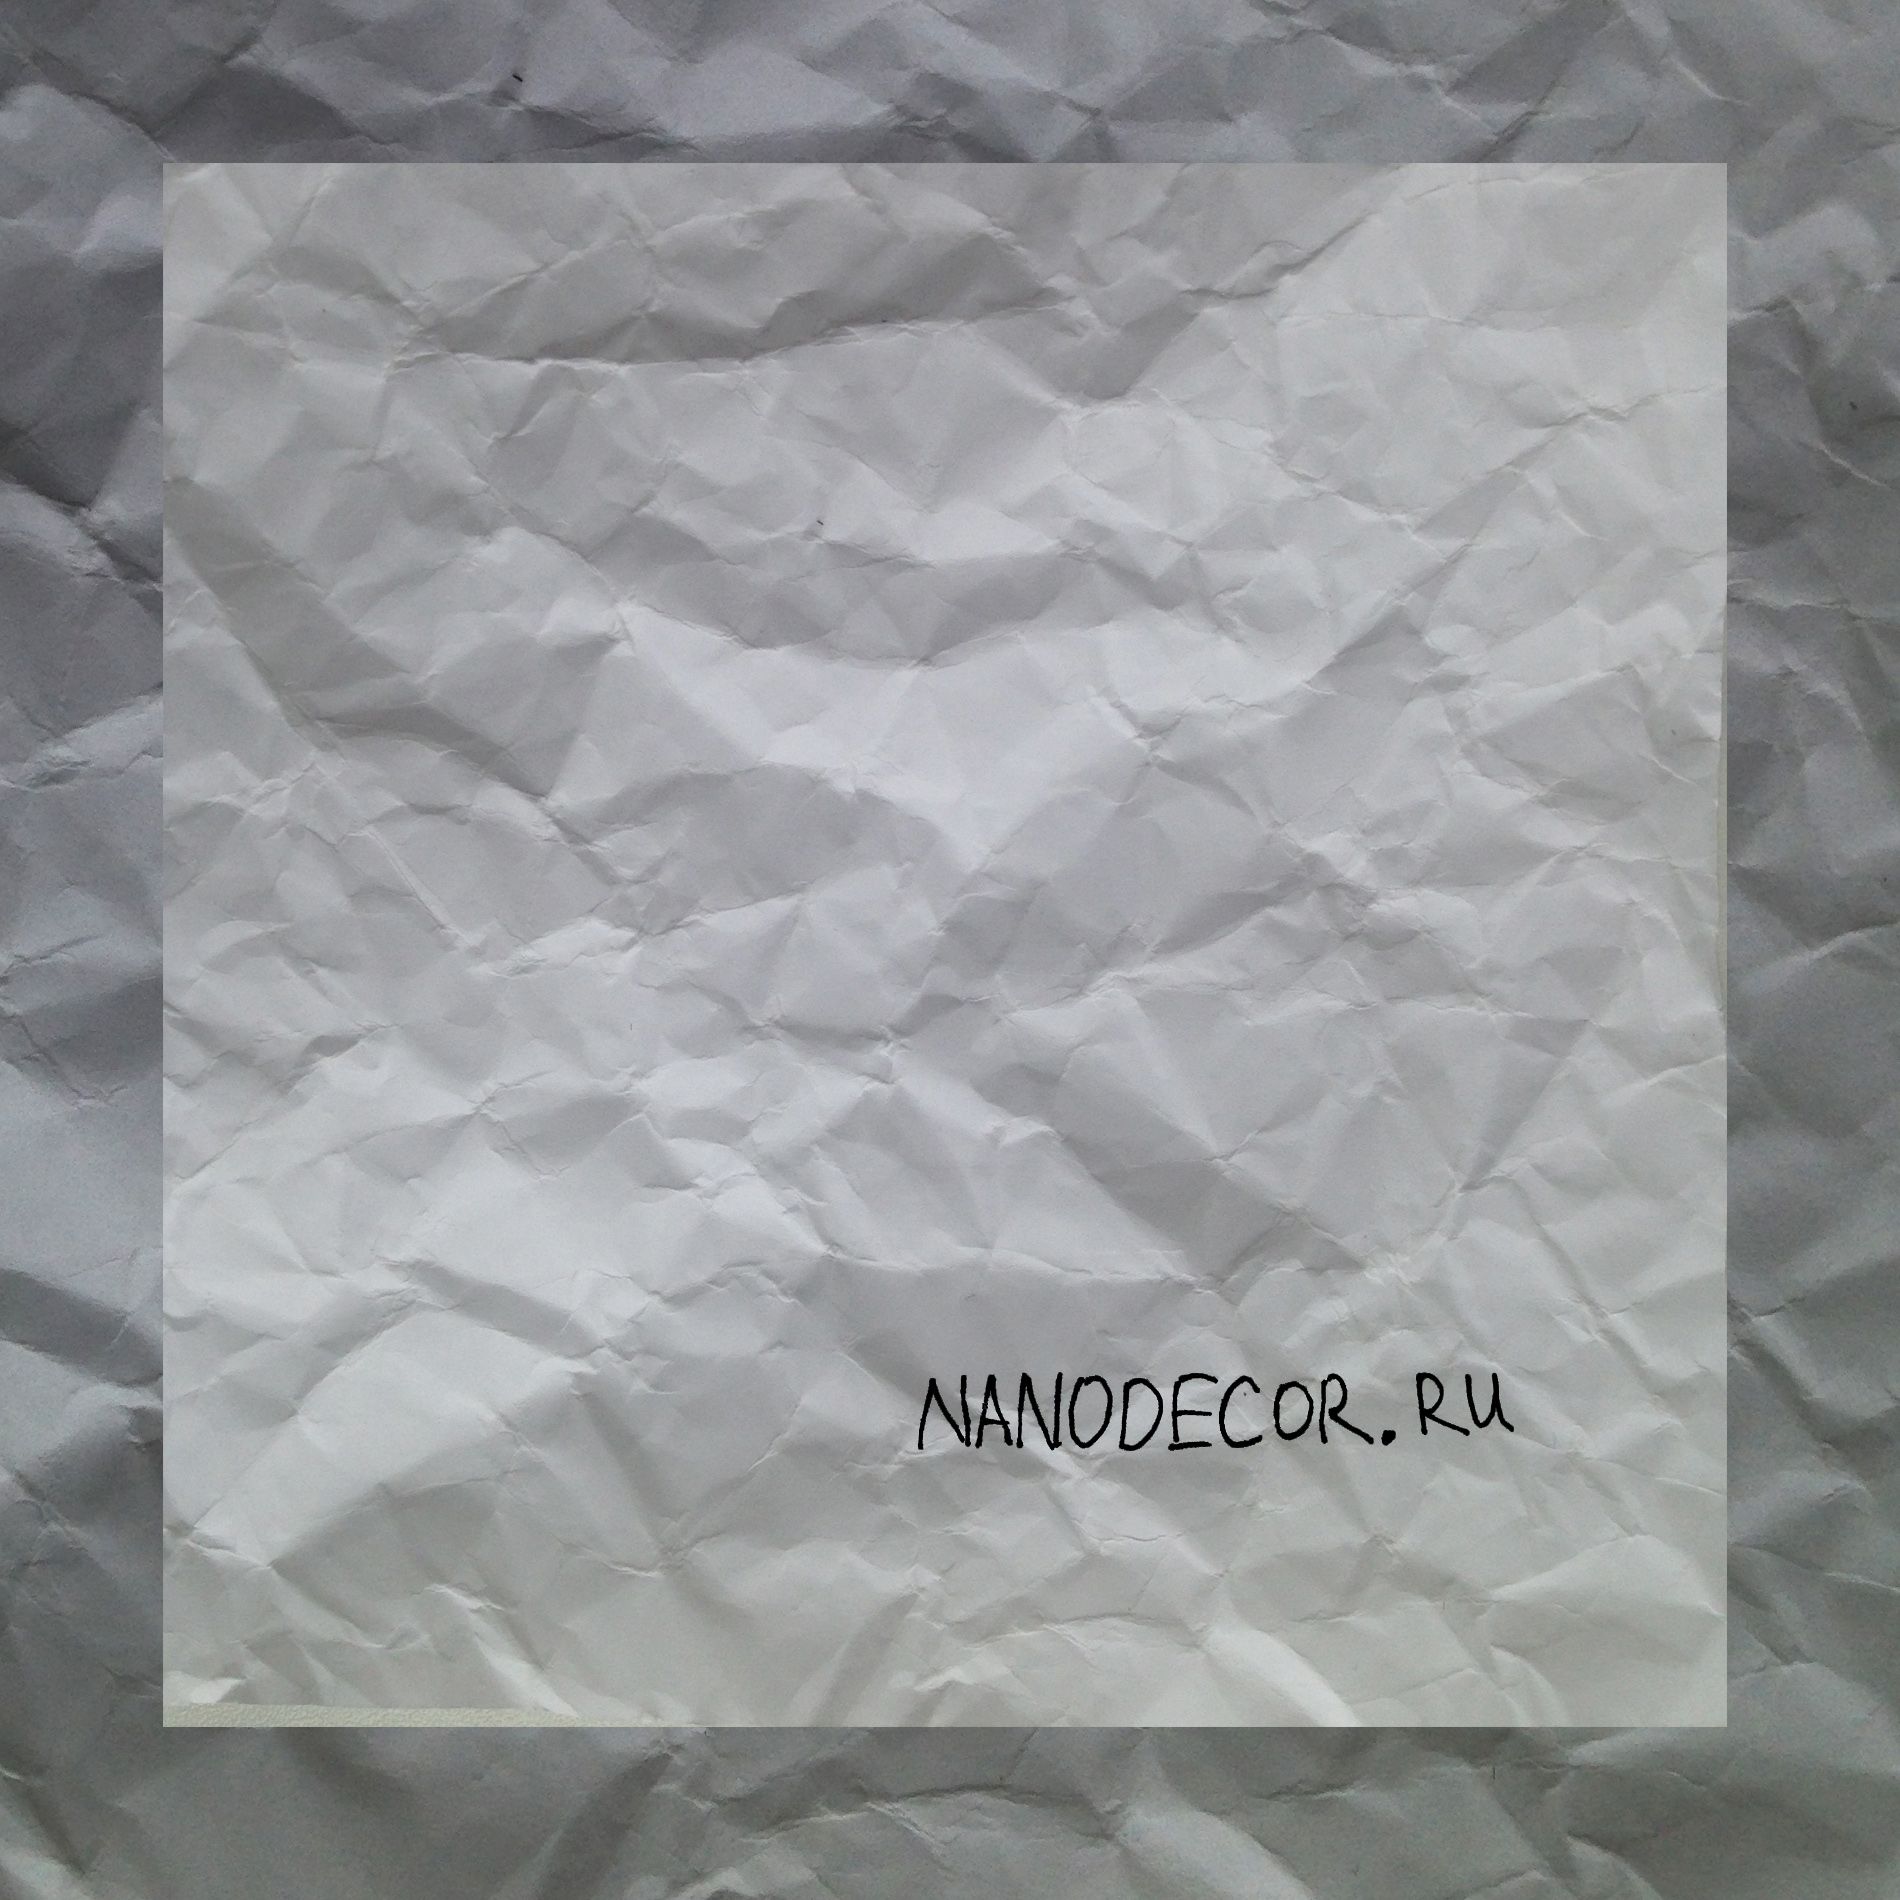 Логотип для nanodecor.ru - дизайнер Papoyan